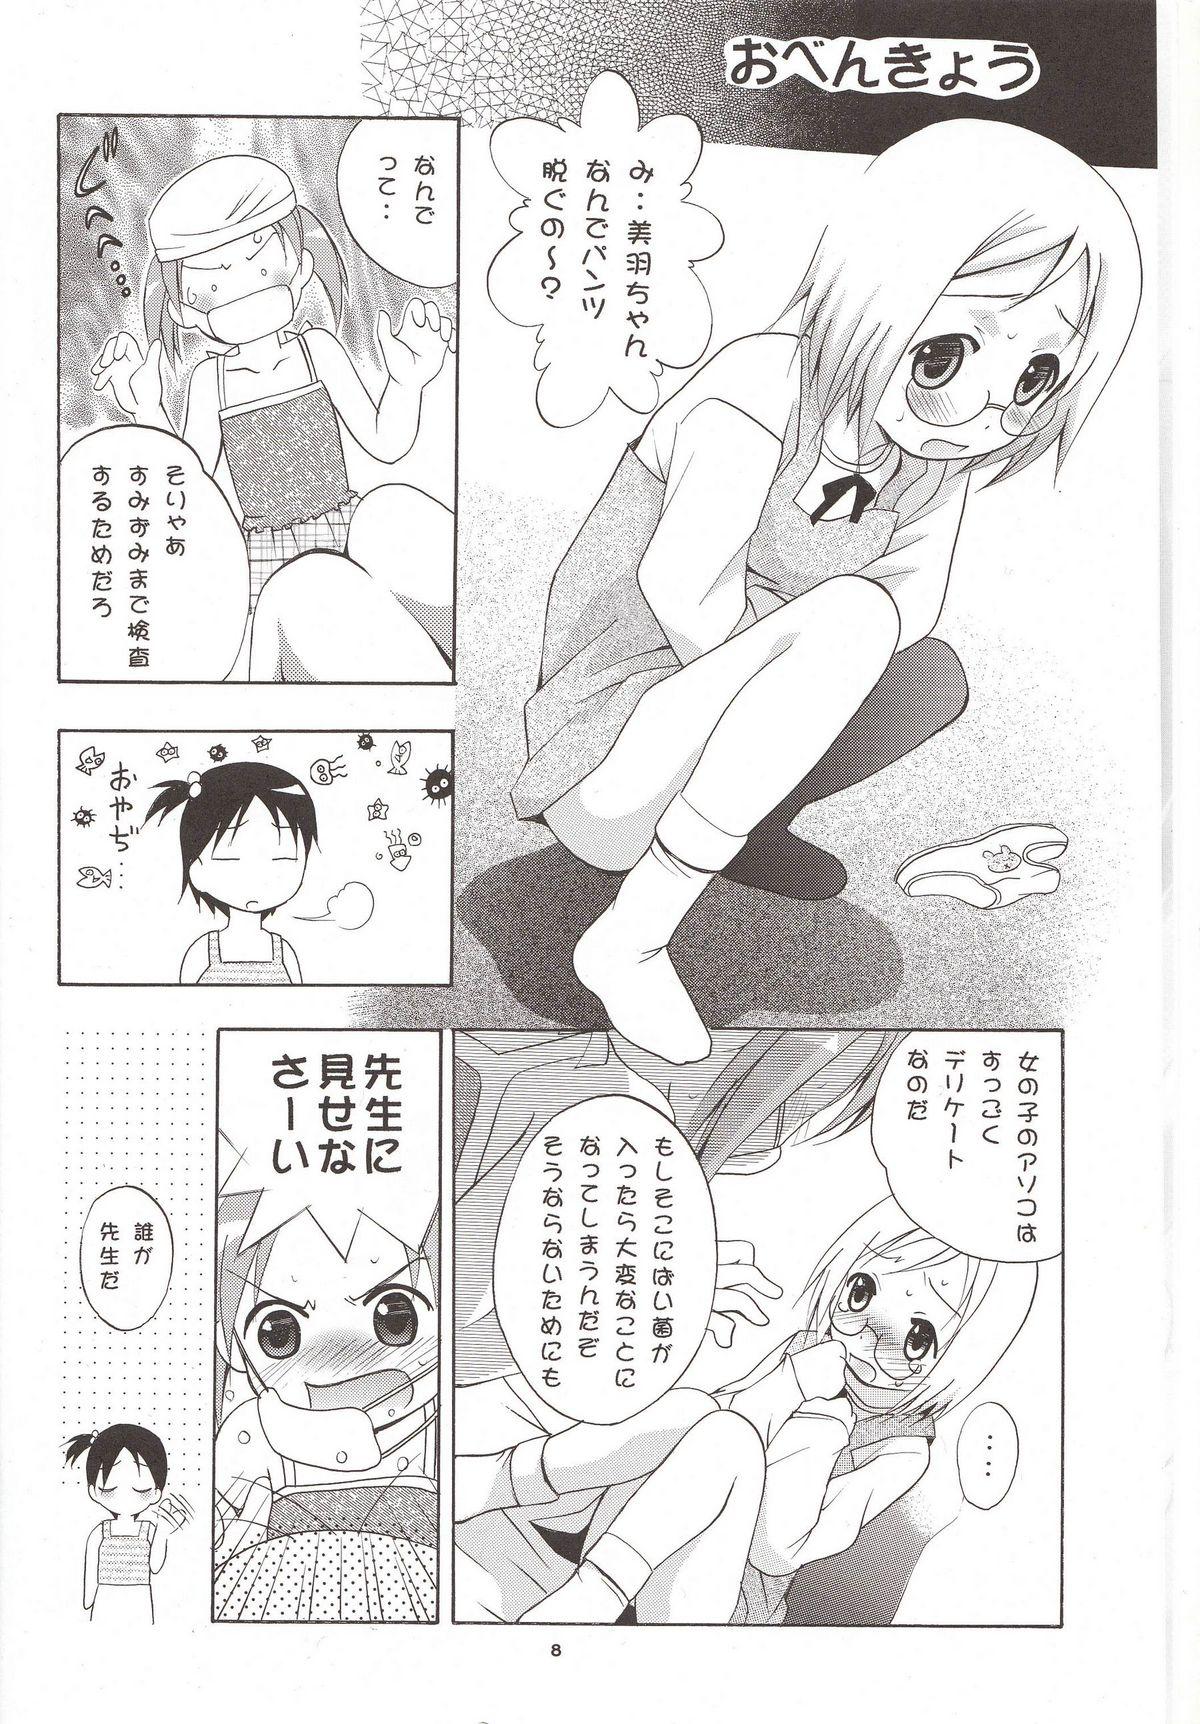 Family Porn Mousou Mini Theater 16 - Ichigo mashimaro Adult - Page 7